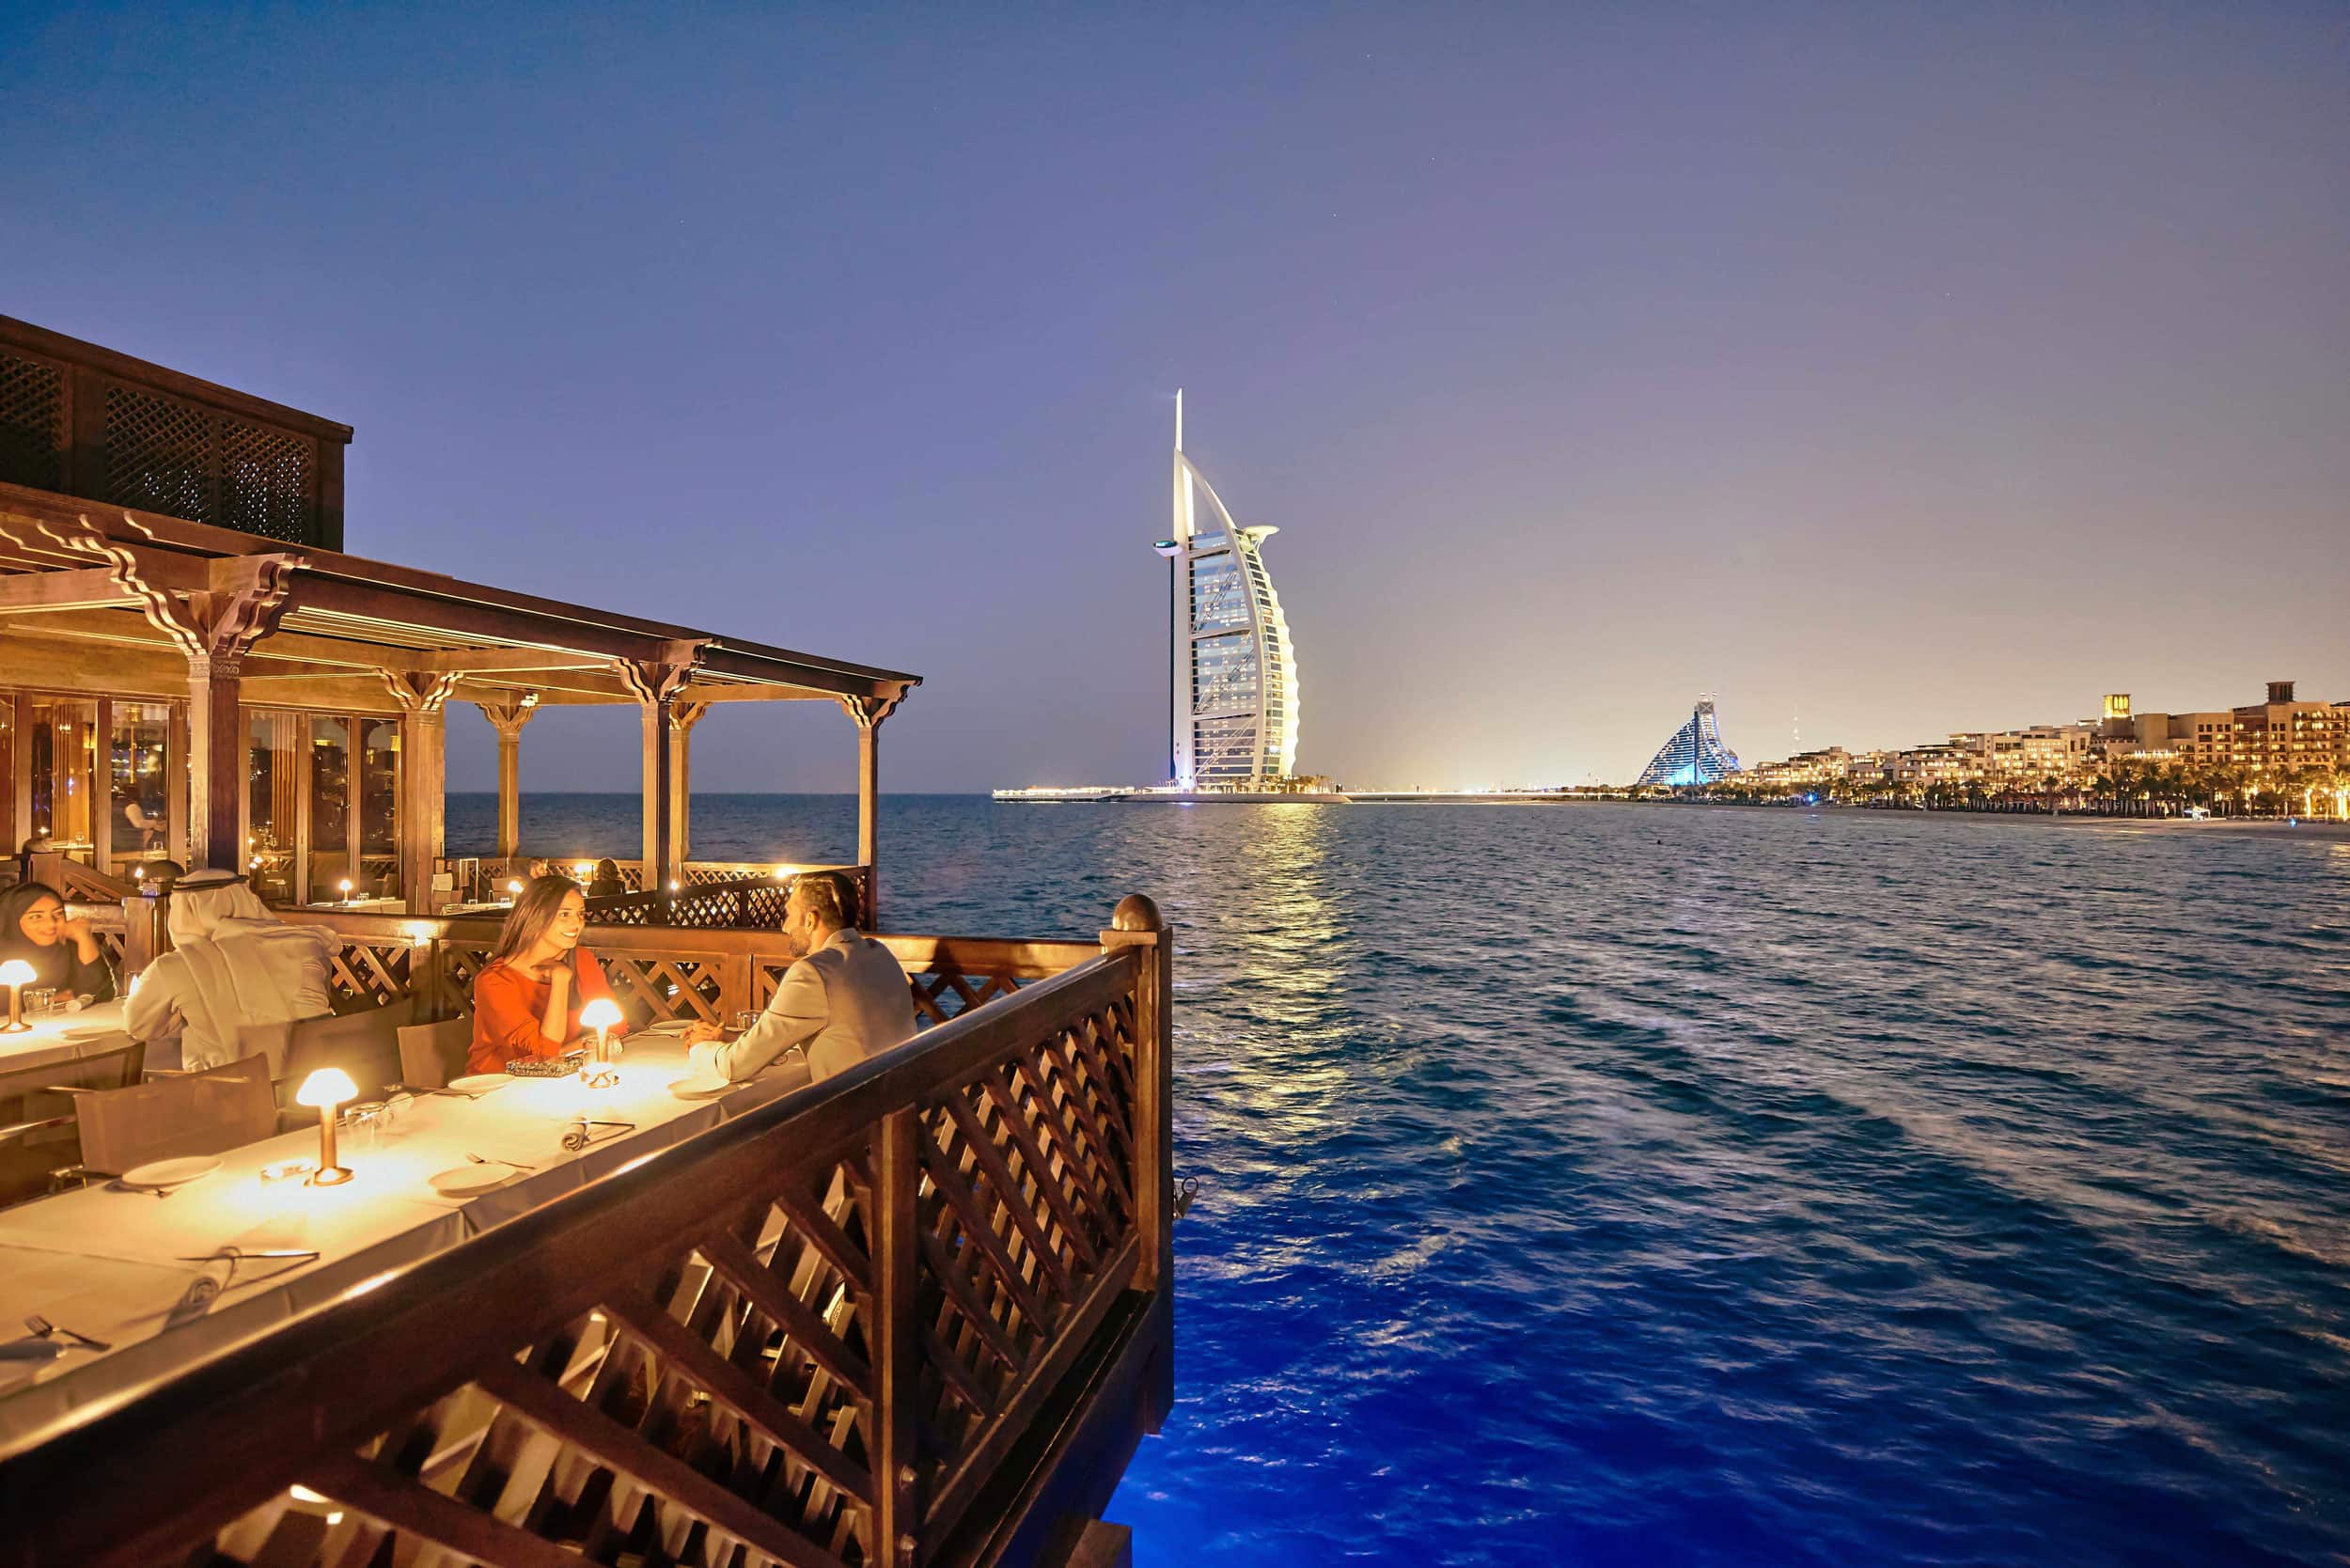 Pierchic | Romantic Restaurants in Dubai | Visit Dubai